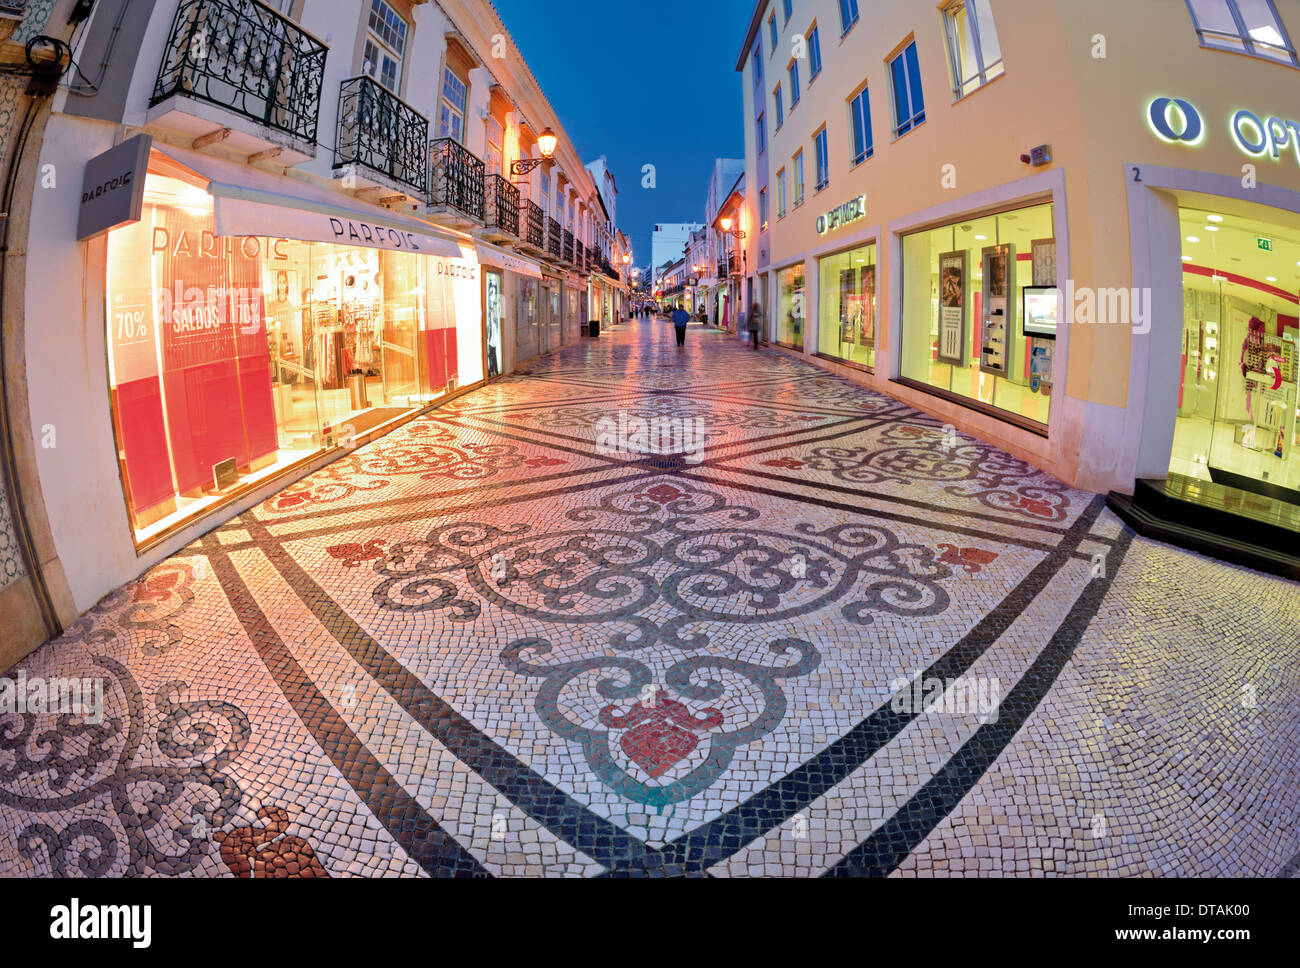 Portugal, Algarve: Typical portuguese cobblestone street in the historic center of Faro Stock Photo